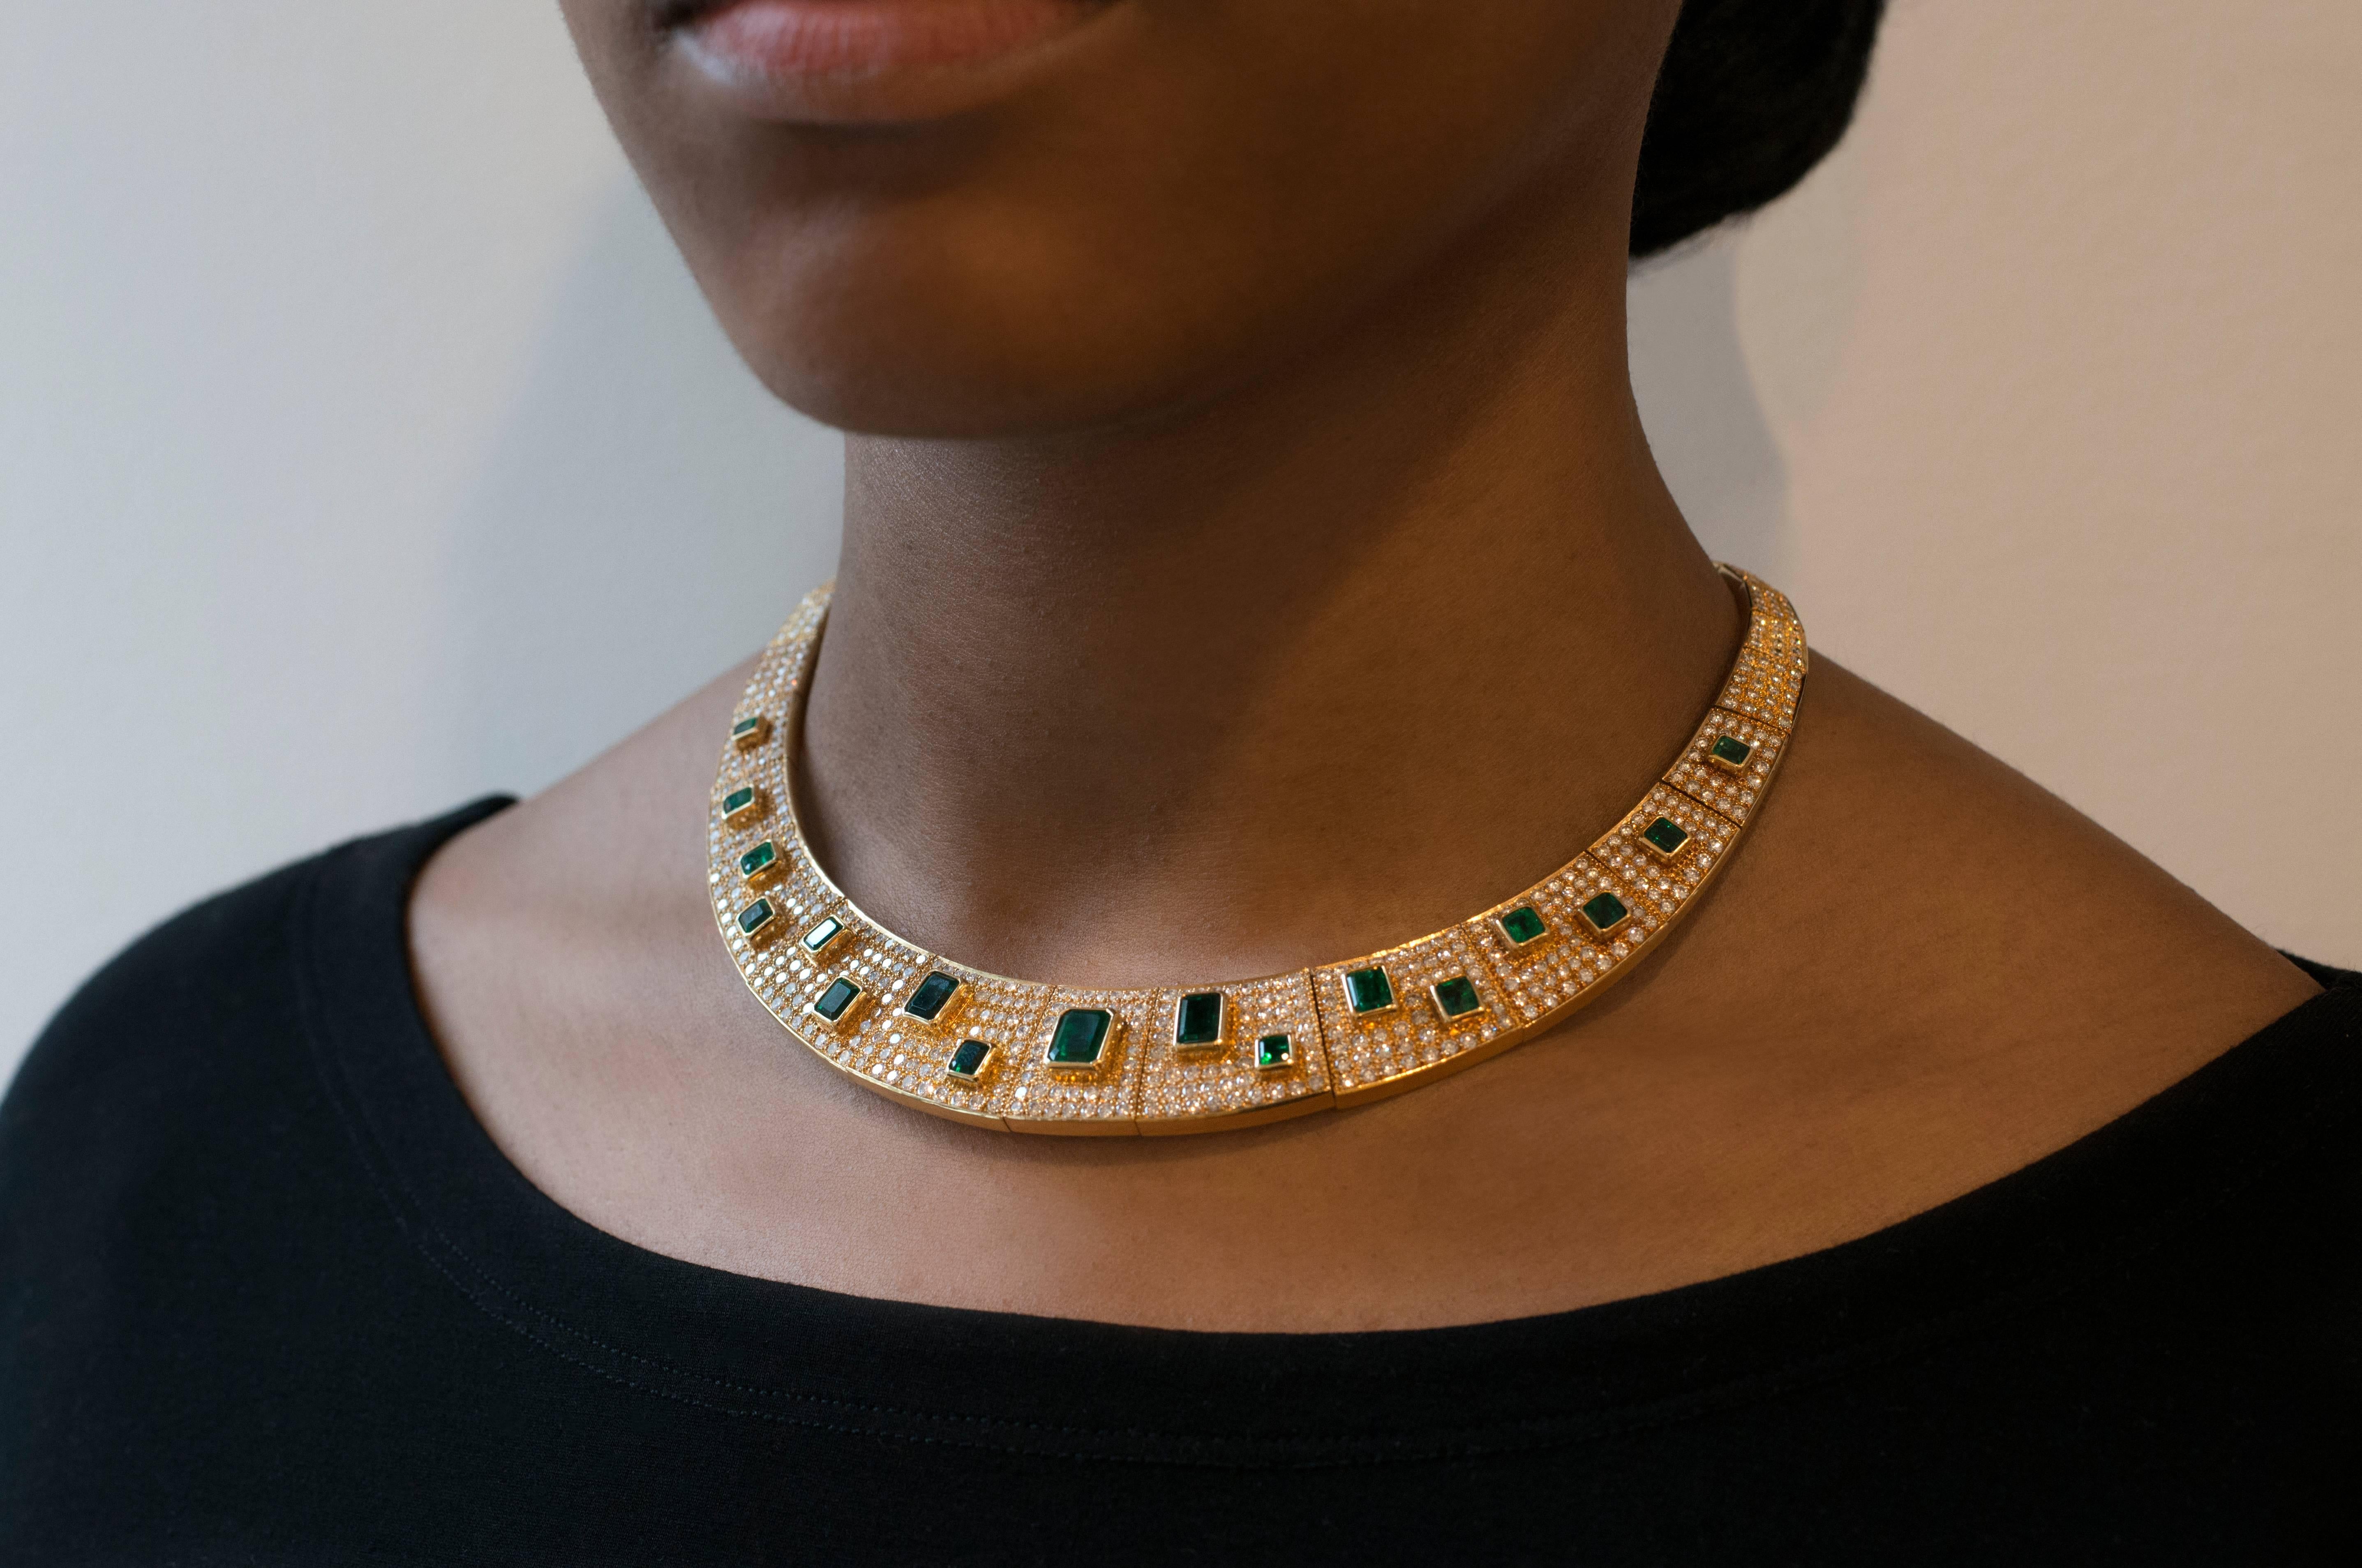 Halskette aus Smaragd, Diamantenpavé und 18-karätigem Gold, von dem berühmten brasilianischen Schmuckdesigner Haroldo Burle Marx, um 1980. 

Die Halskette besteht aus insgesamt 15 Karat Diamanten in Pavé-Fassung und über 18 Karat Smaragden im